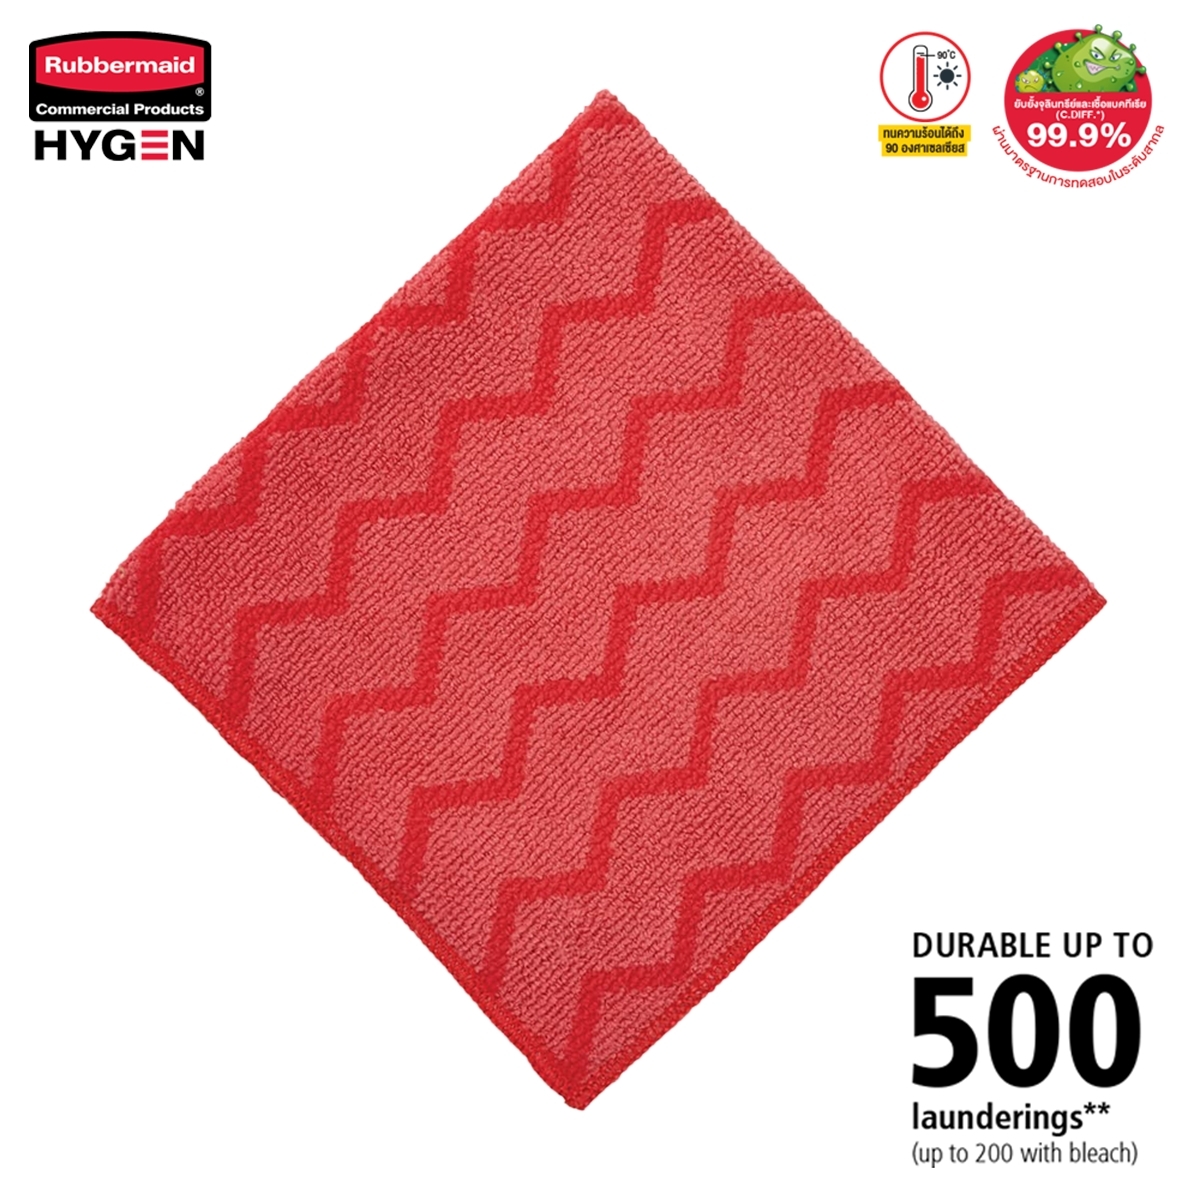 ผ้าไมโครไฟเบอร์ HYGEN™ ขนาด 16 นิ้ว สีแดง แบบซิกแซก เกรดพรีเมี่ยม ซักน้ำร้อน และเข้าเครื่องอบได้ถึง 92°C